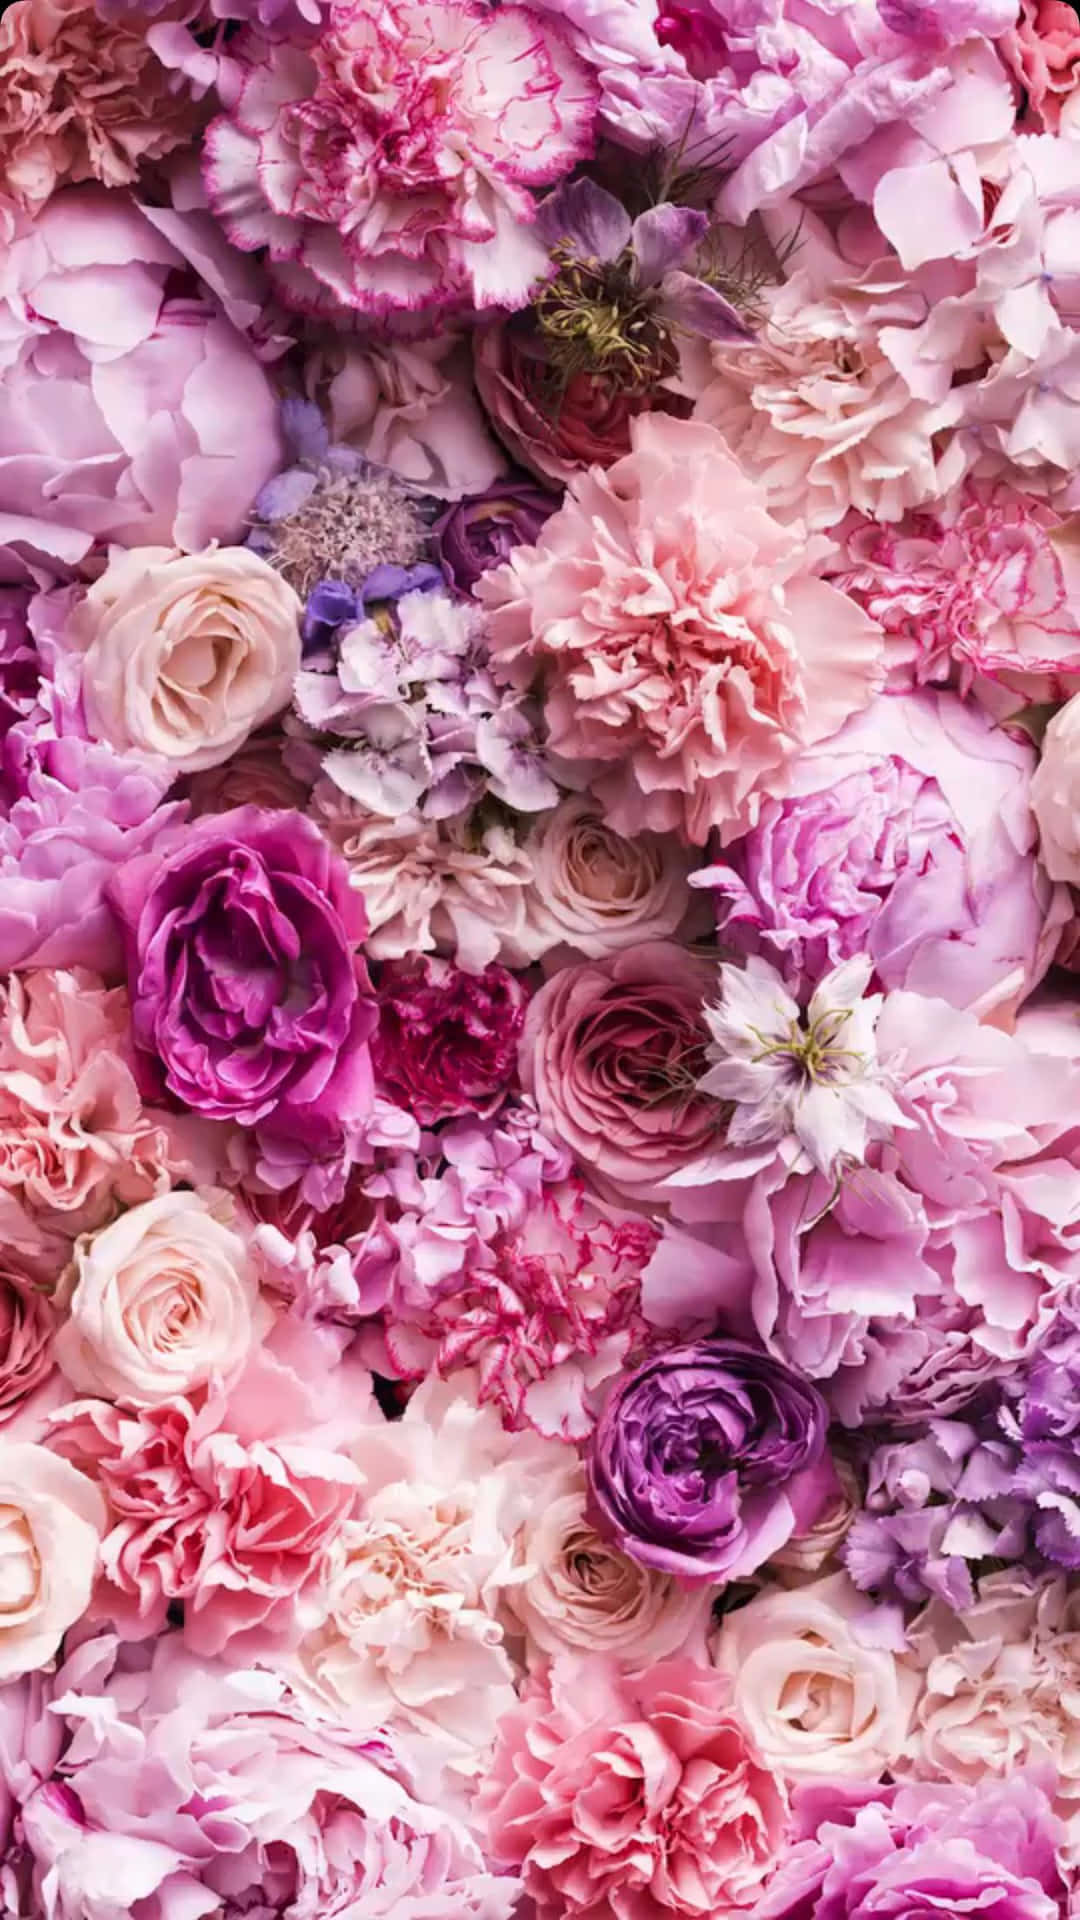 Tải ảnh nền điện thoại iPhone hoa hồng nhạt miễn phí để mang đến cho màn hình điện thoại của bạn một vẻ đẹp đầy thơ mộng và nữ tính. Với những đường nét tinh tế của hoa hồng, bạn sẽ cảm nhận được sự dịu dàng và duyên dáng từ chủ đề này.